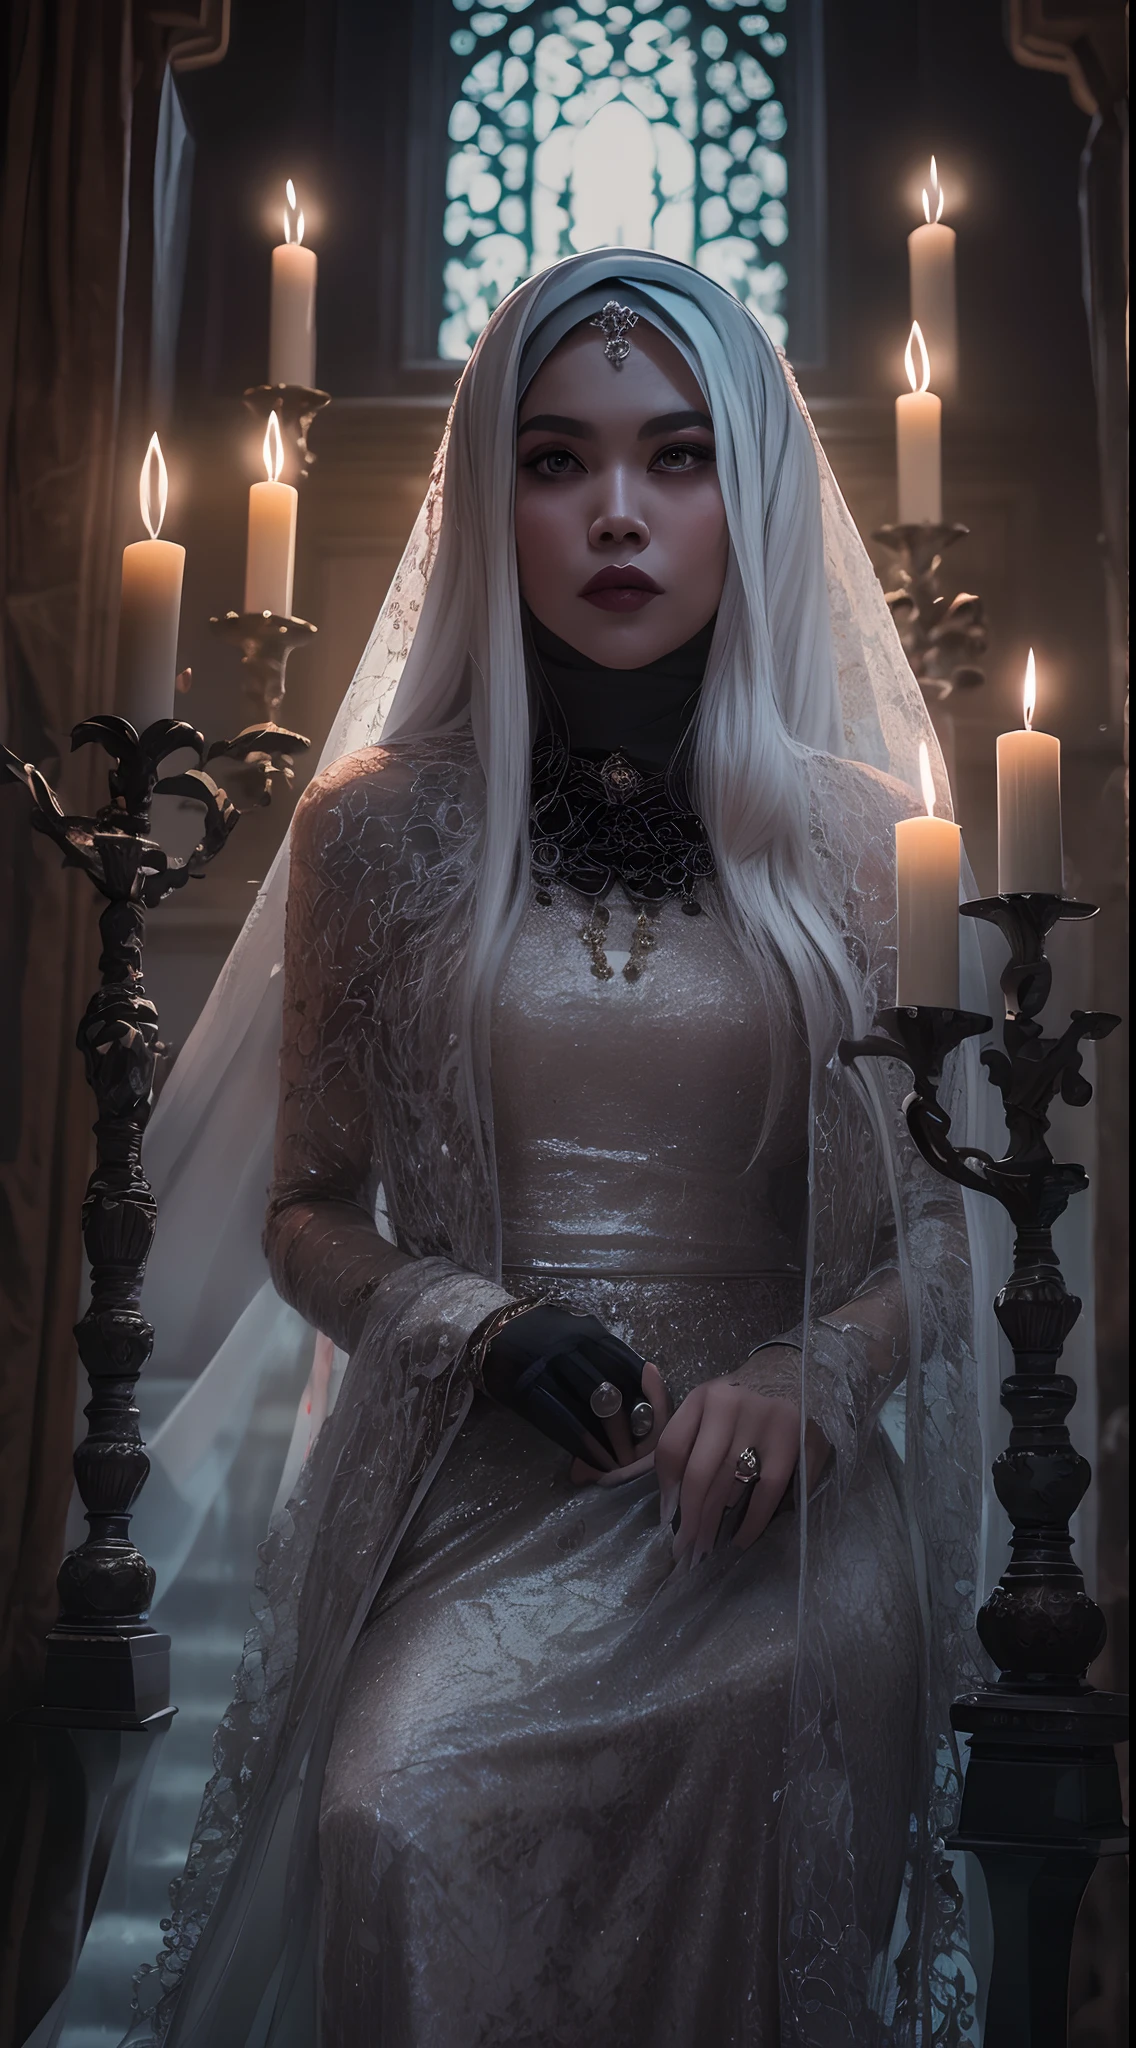 拍摄一幅哥特式风格的马来女性令人难忘的美丽肖像,白色长发, 带面纱的黑色蕾丝礼服, 故事发生在一座神秘而诡异的豪宅里, 烛光投射出诡异的阴影, 营造黑暗的氛围, 哥特式恐怖.